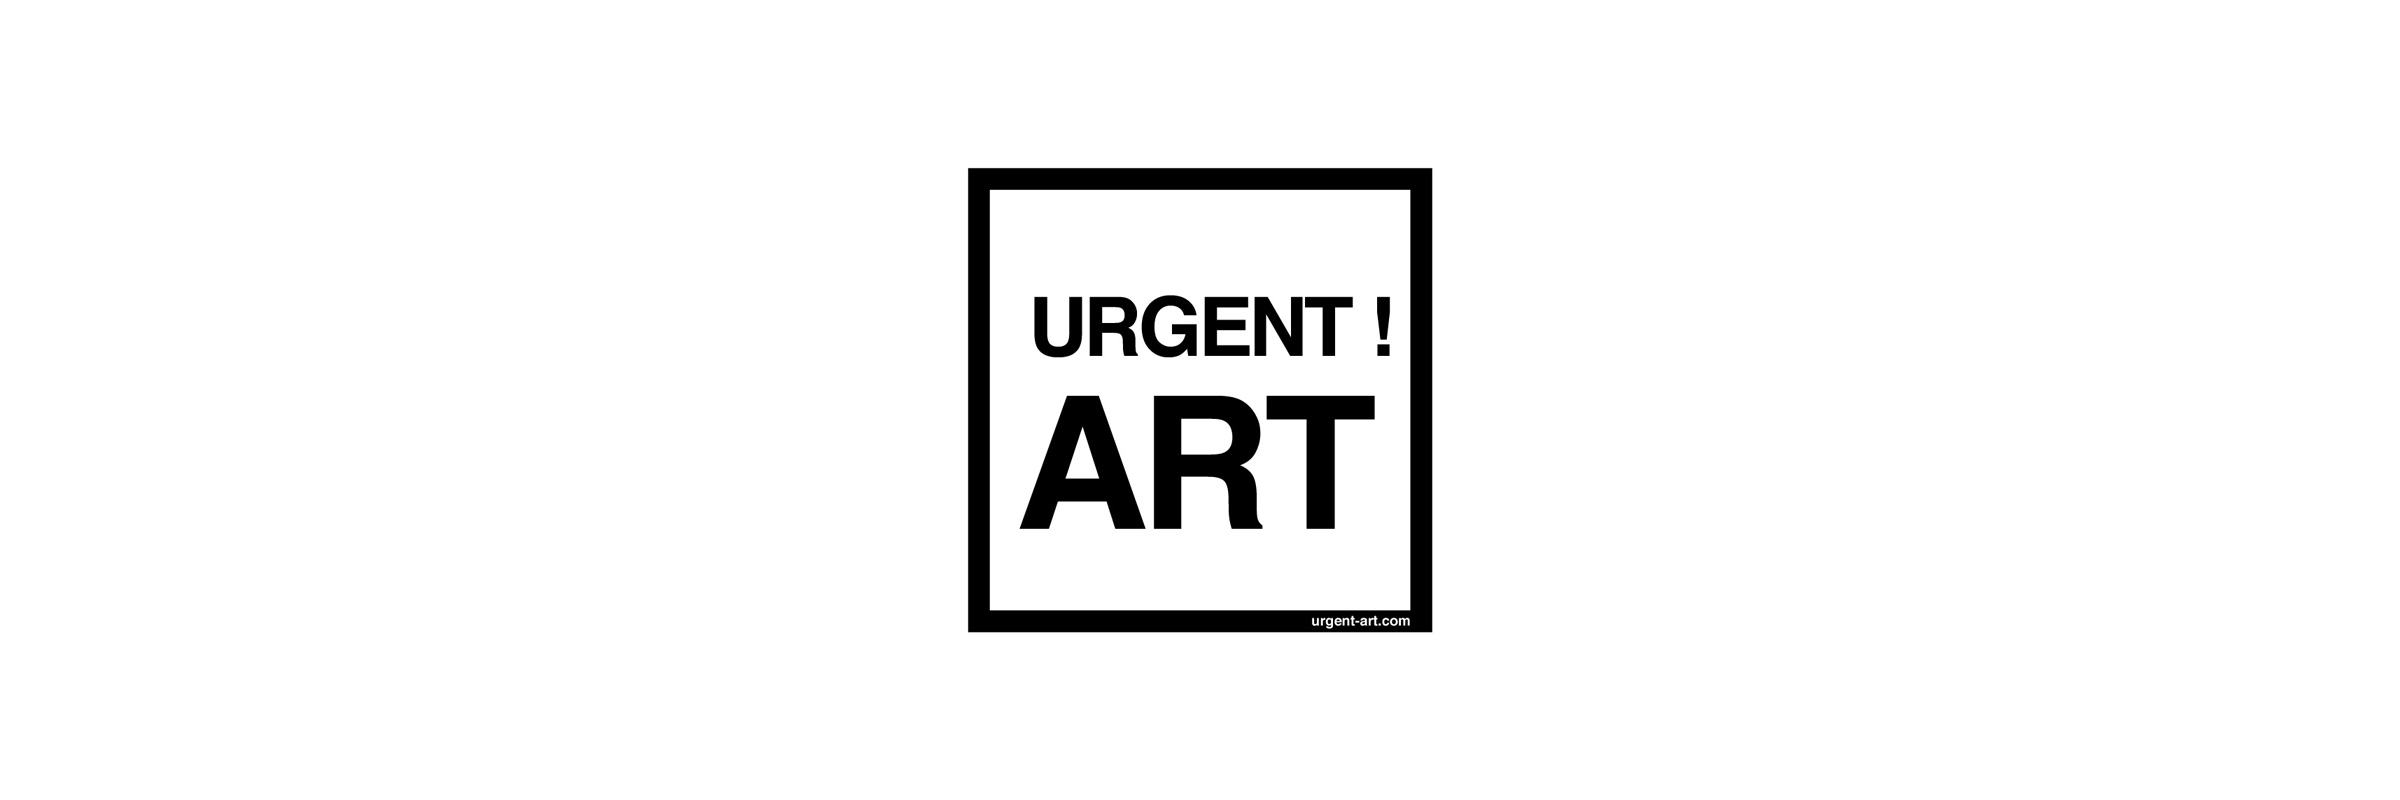 Urgent ! Art